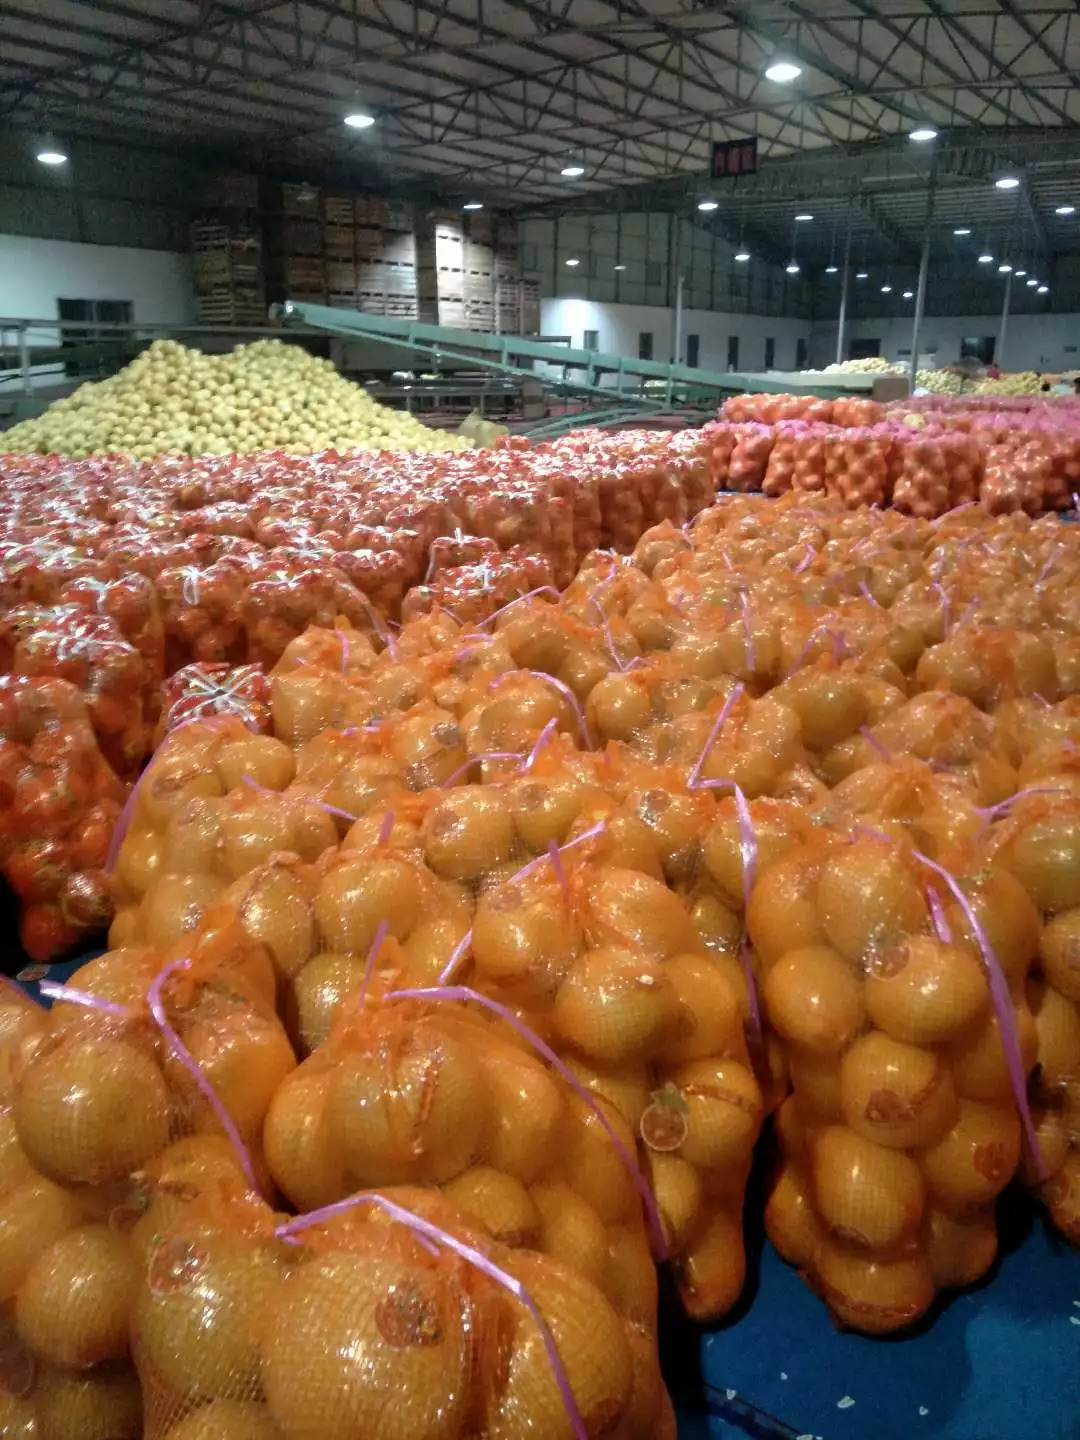 这些有地标性的 各种柚子 想吃哪个味道 来万德隆 超市区就购啦!